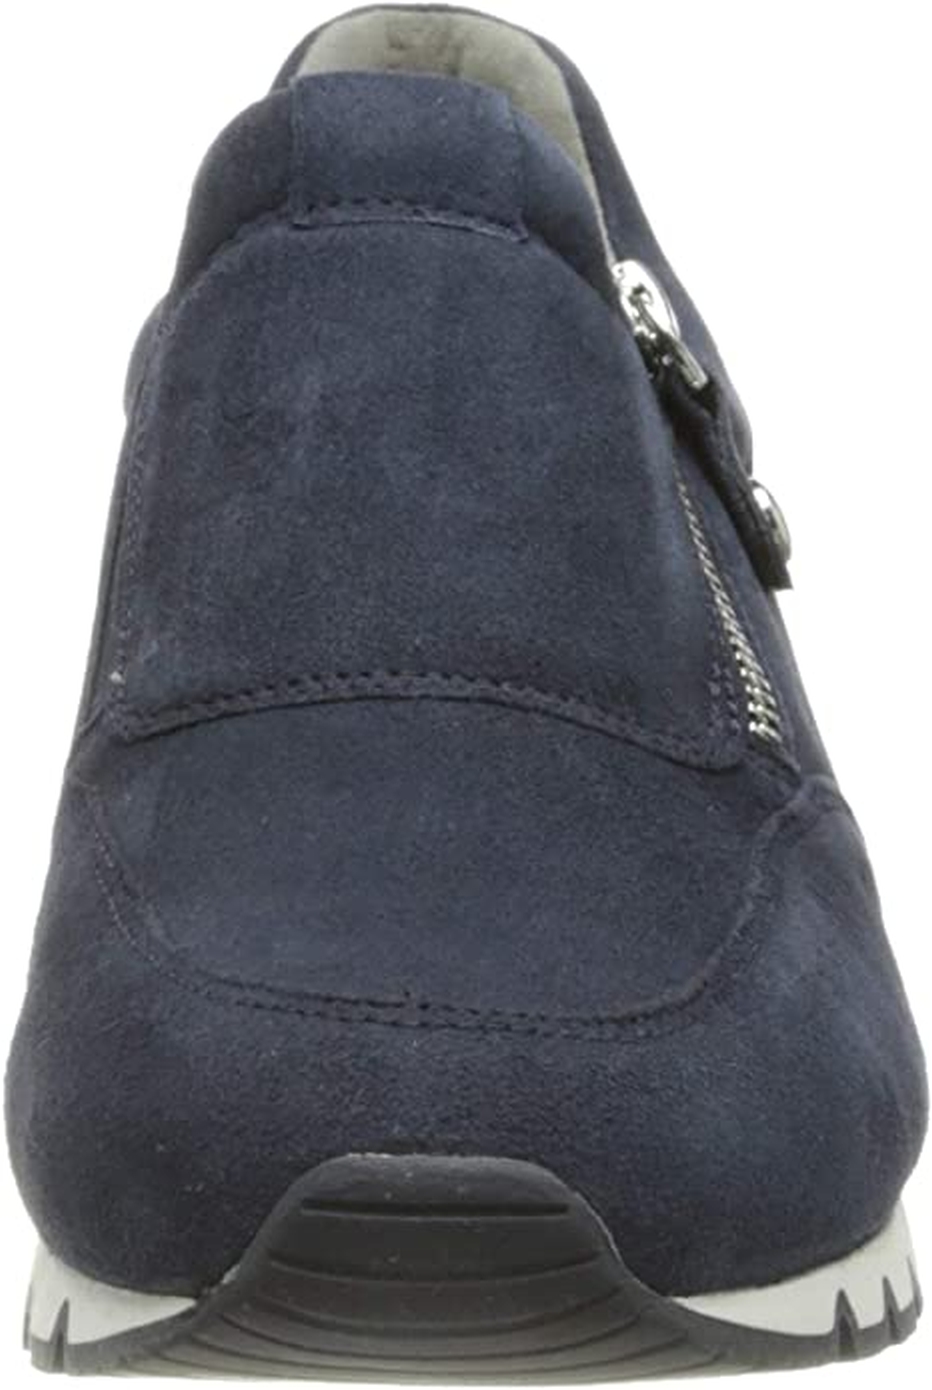 Caprice Sneaker - Blue Nubuck leather